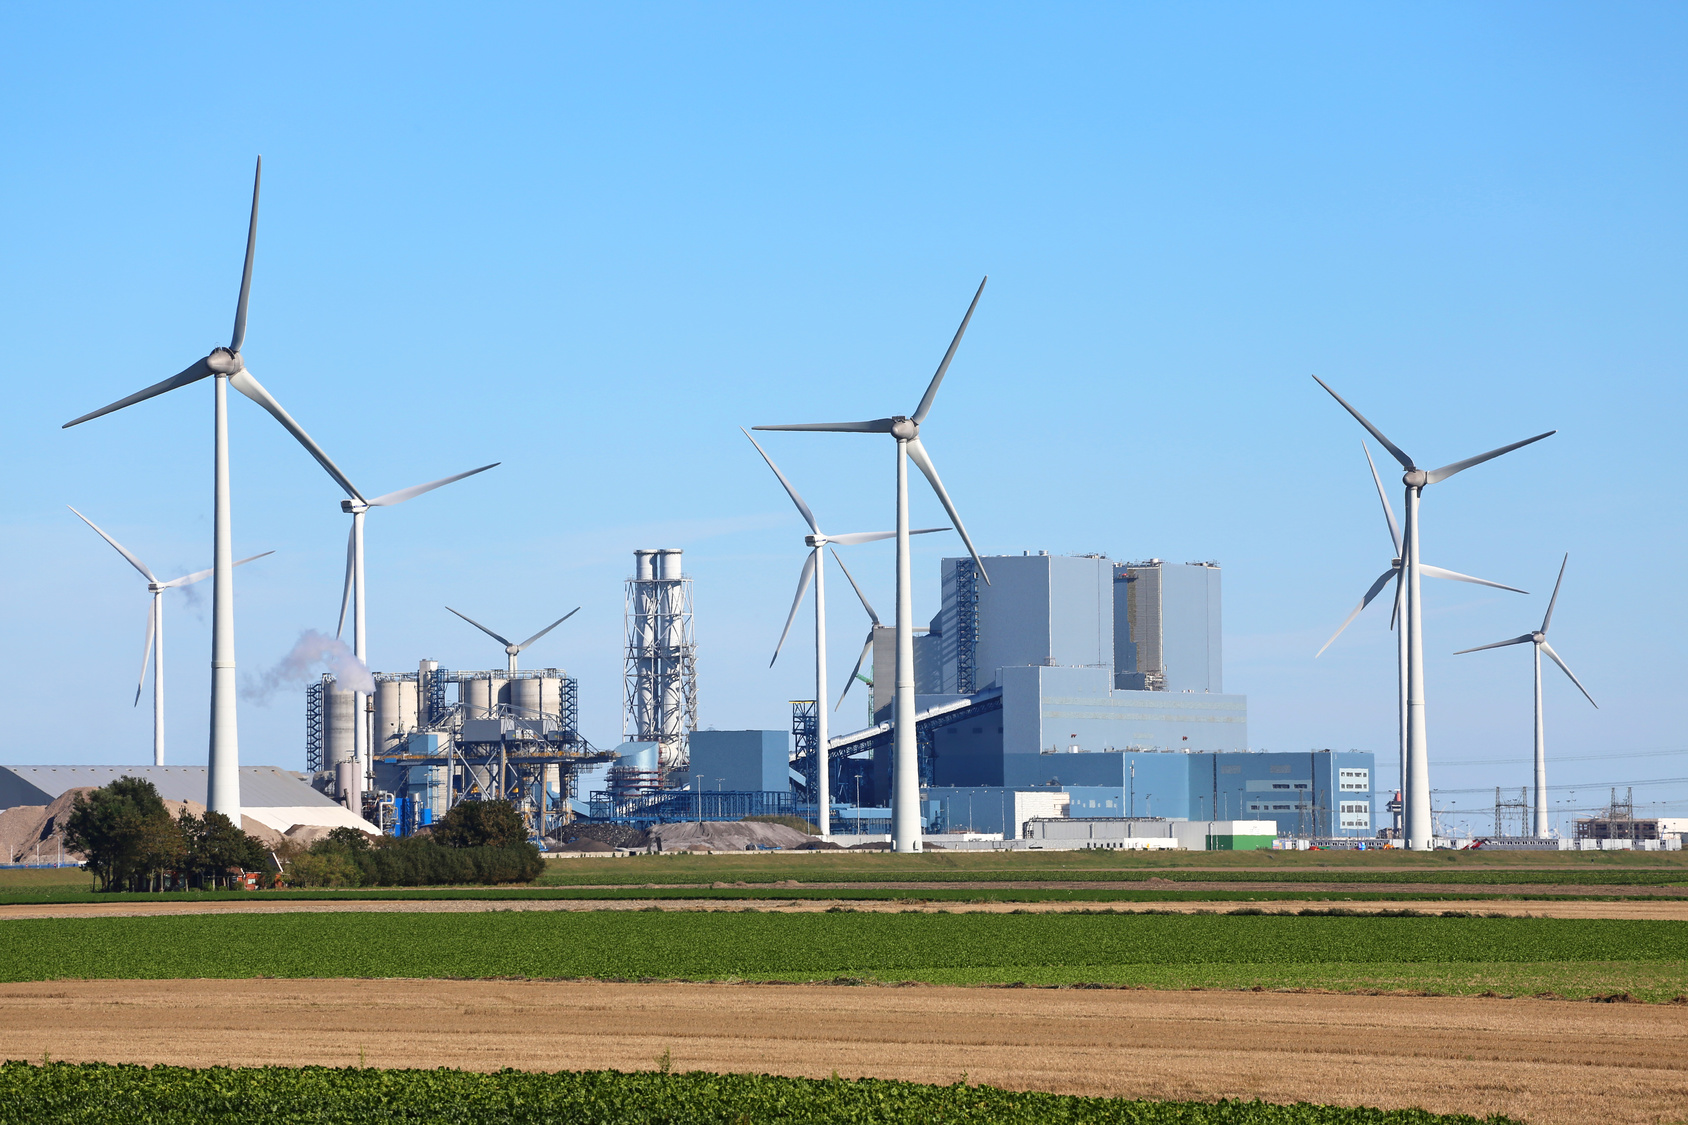 Kohlekraftwerk Eemshaven